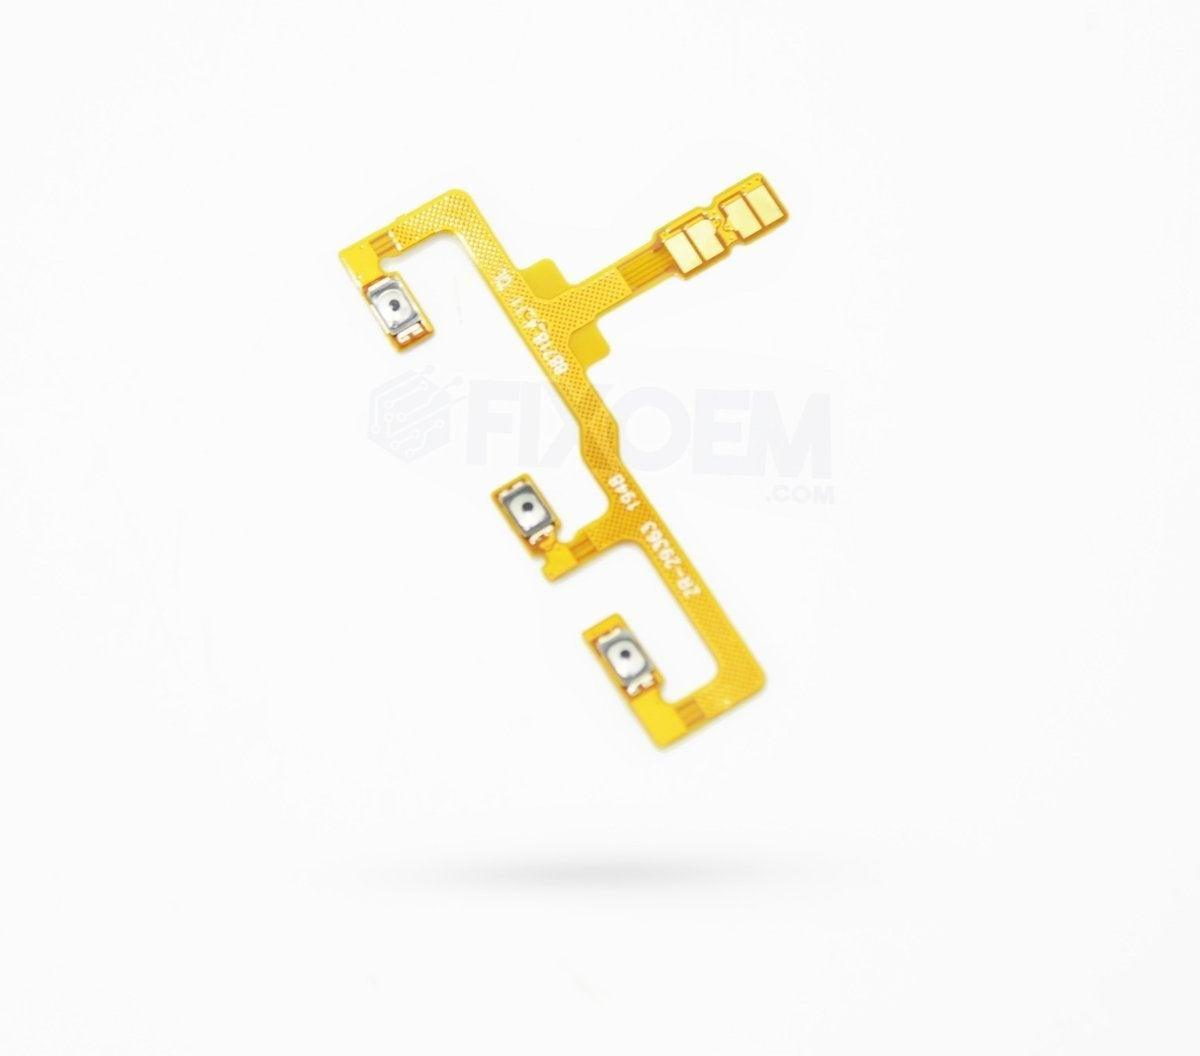 Flex Encendido Moto G8 Power Xt2041 a solo $ 60.00 Refaccion y puestos celulares, refurbish y microelectronica.- FixOEM